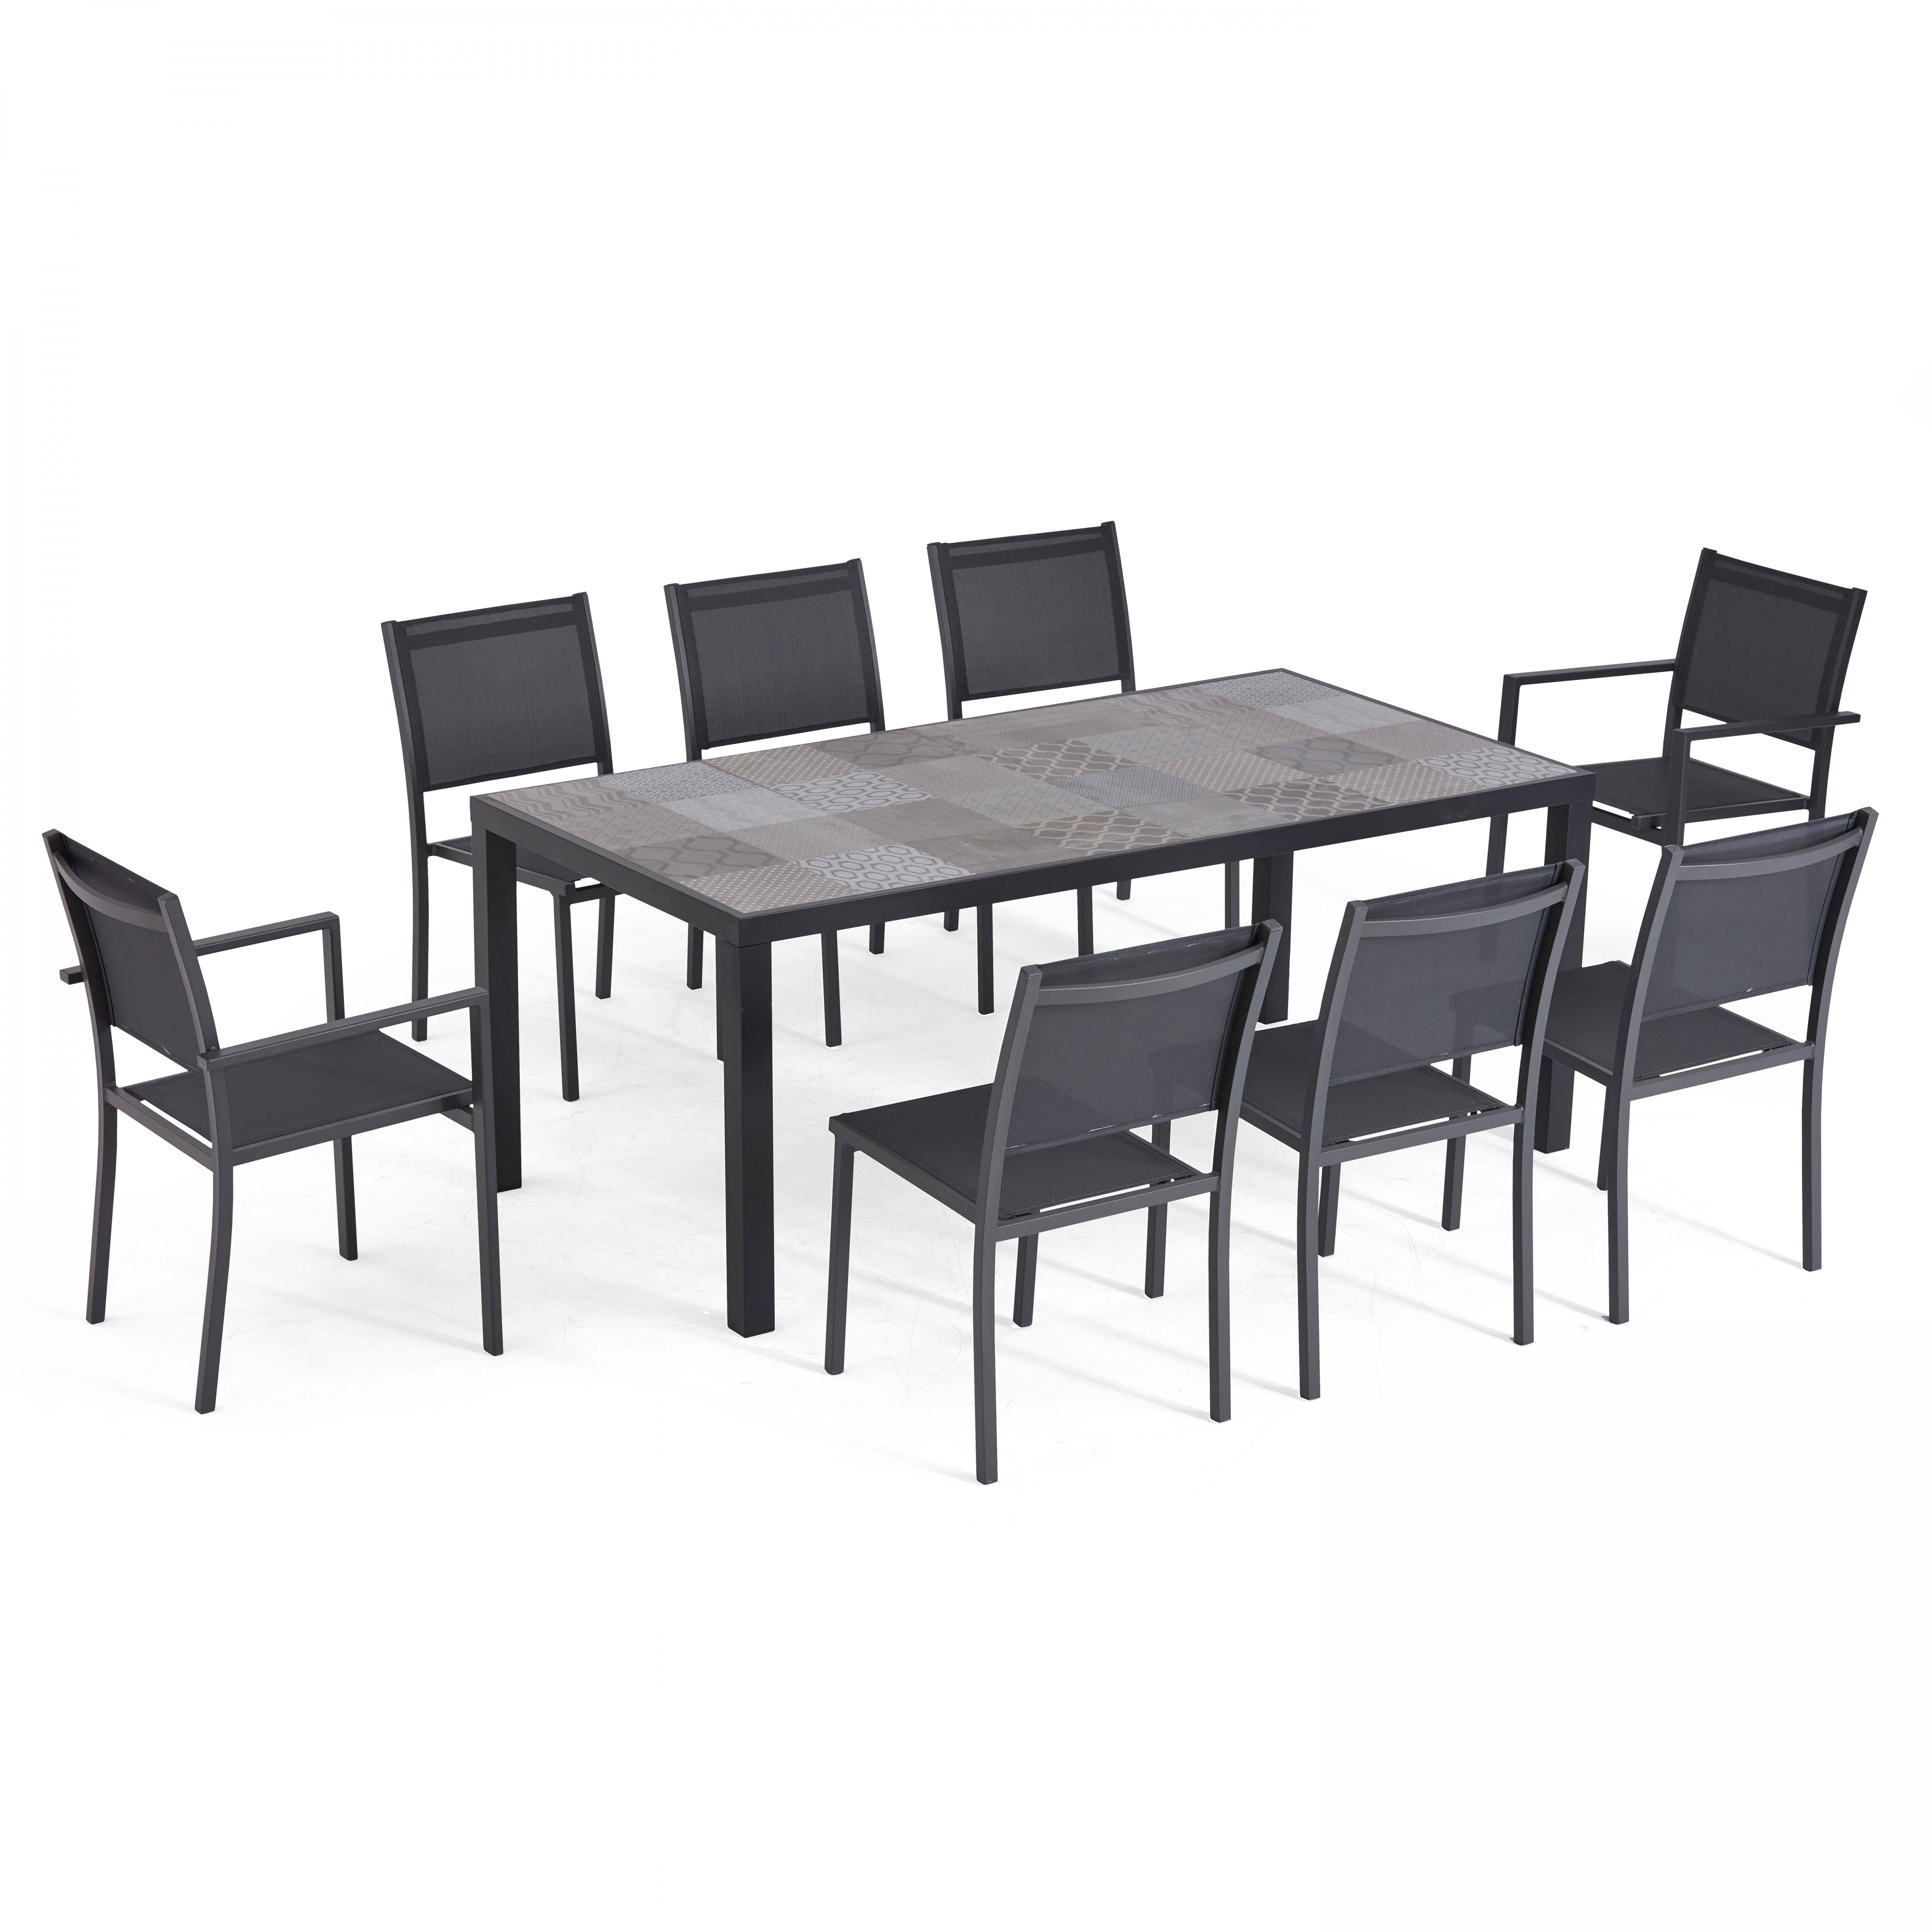 Ensemble table de jardin en aluminium et céramique motif Patchwork, avec 6 chaises et 2 chaises avec